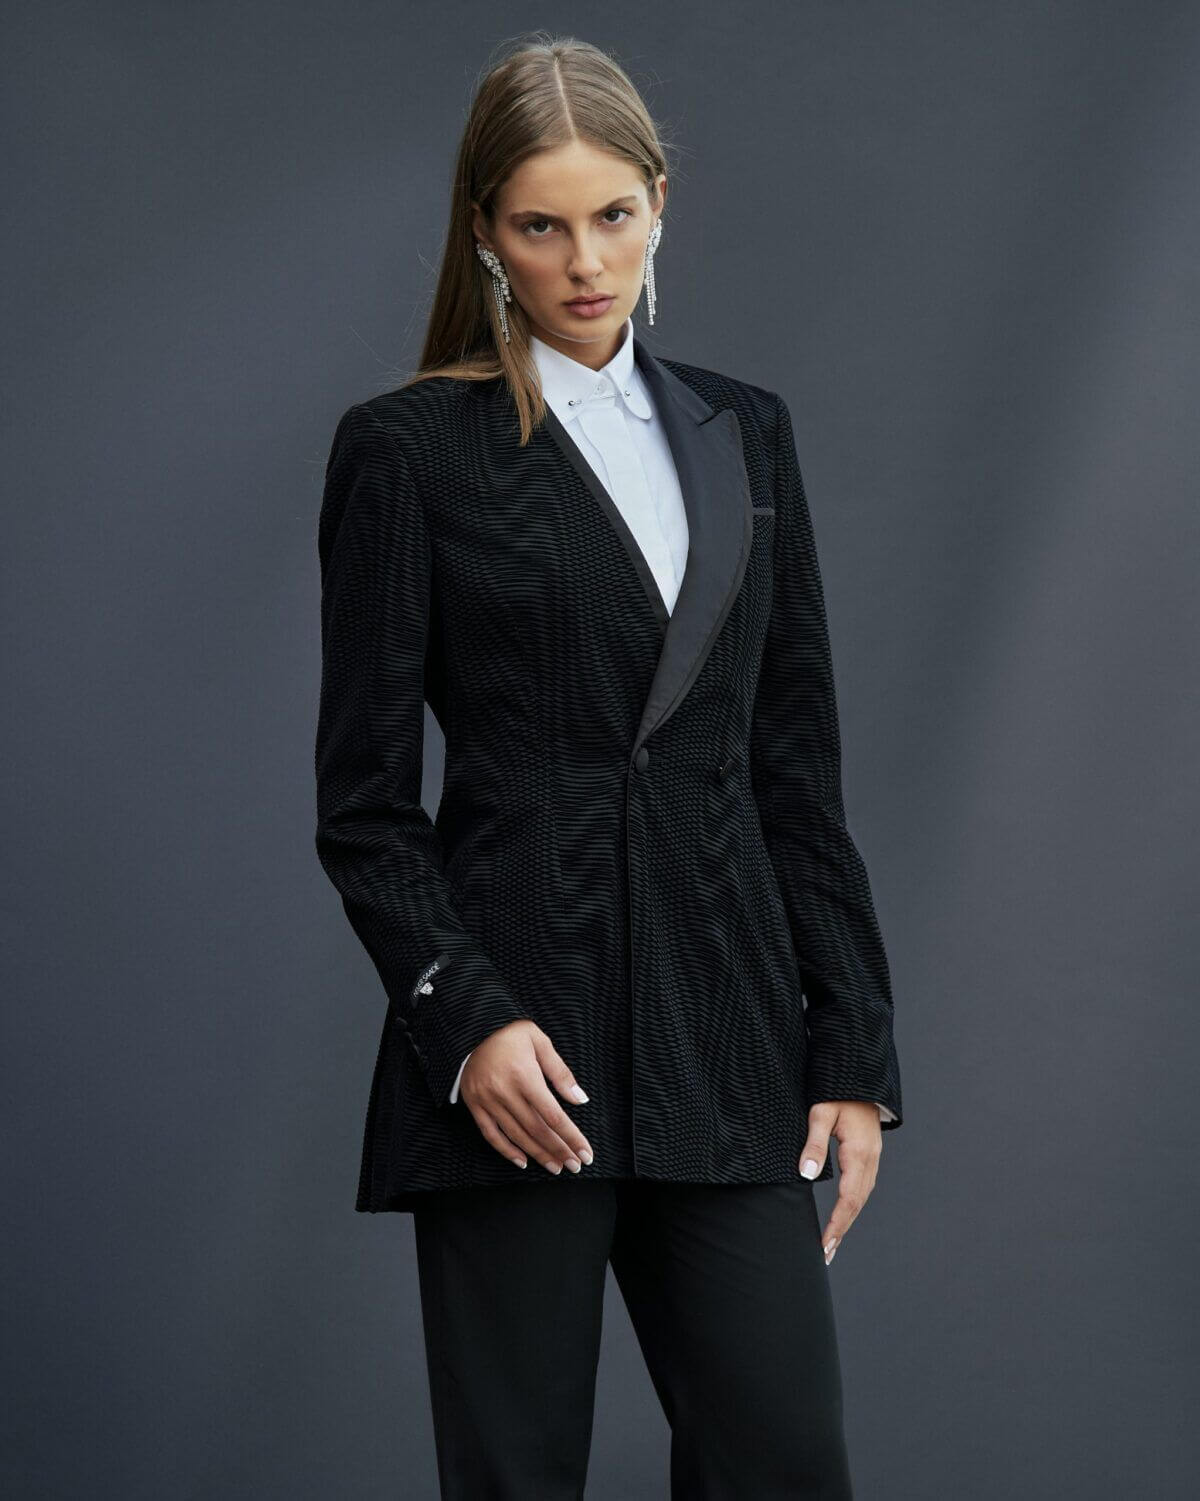 Black tuxedo suit for women